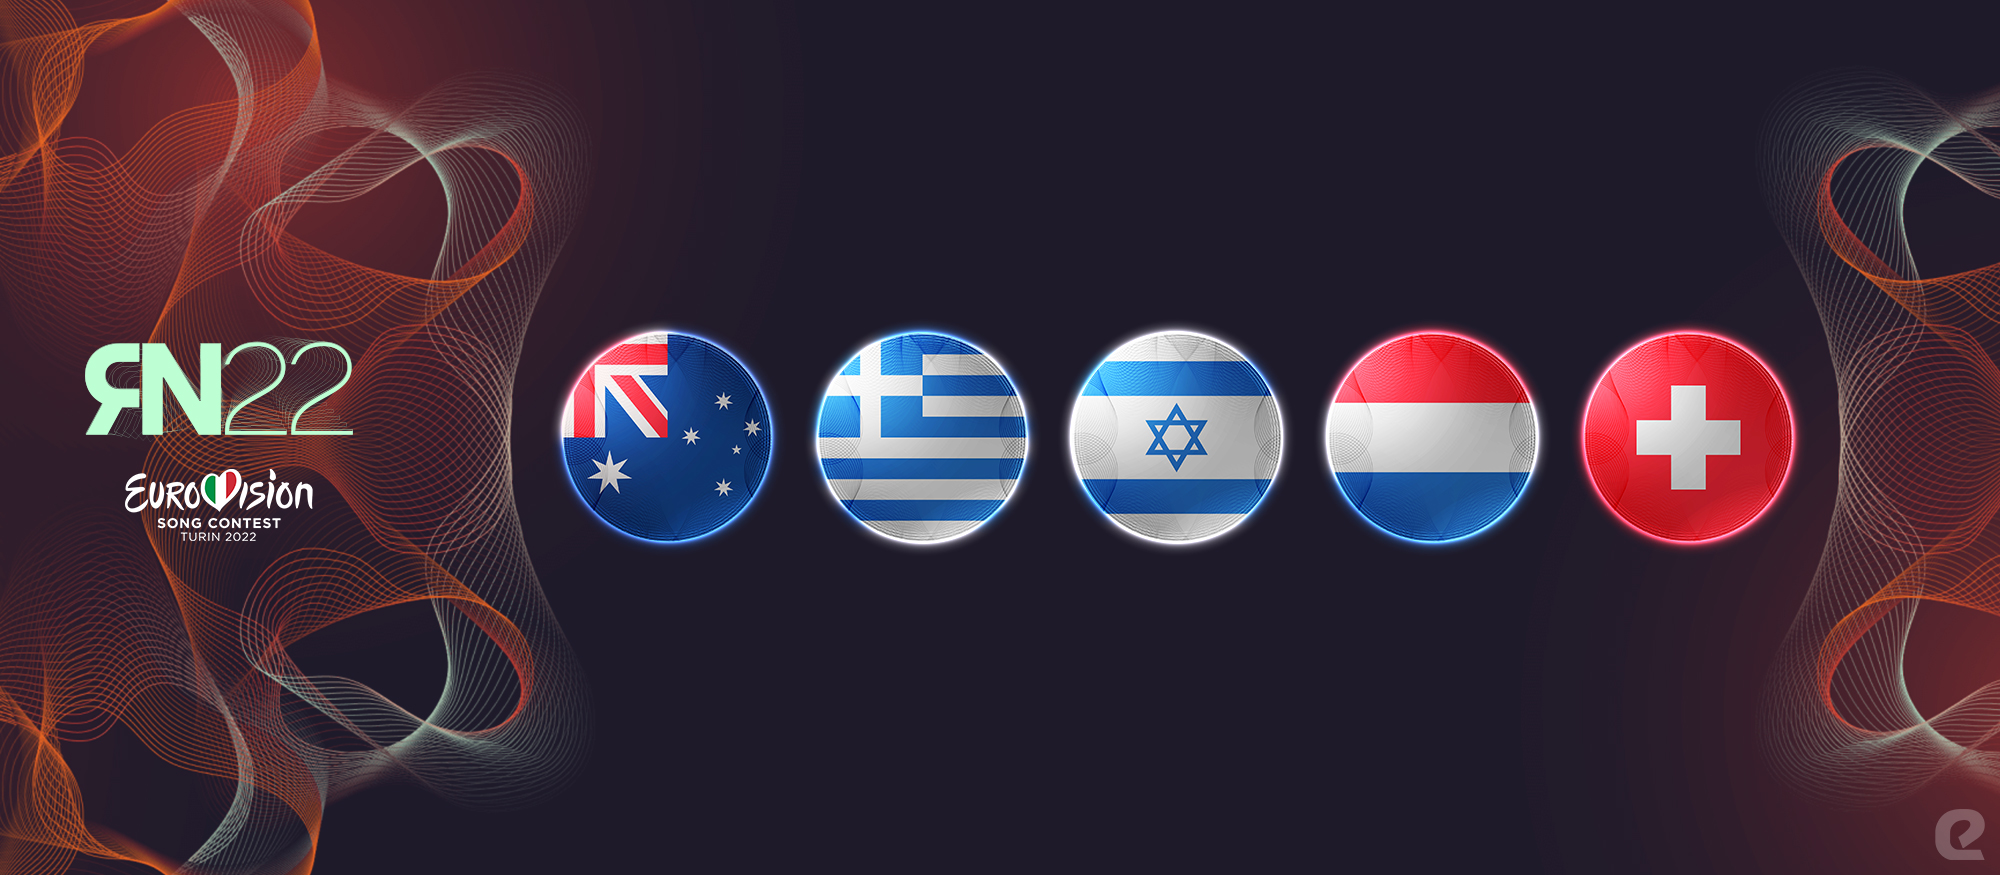 Razmišljamo naglas Eurosong 2022. eurosong.hr Australija Grčka Izrael Nizozemska Švicarska